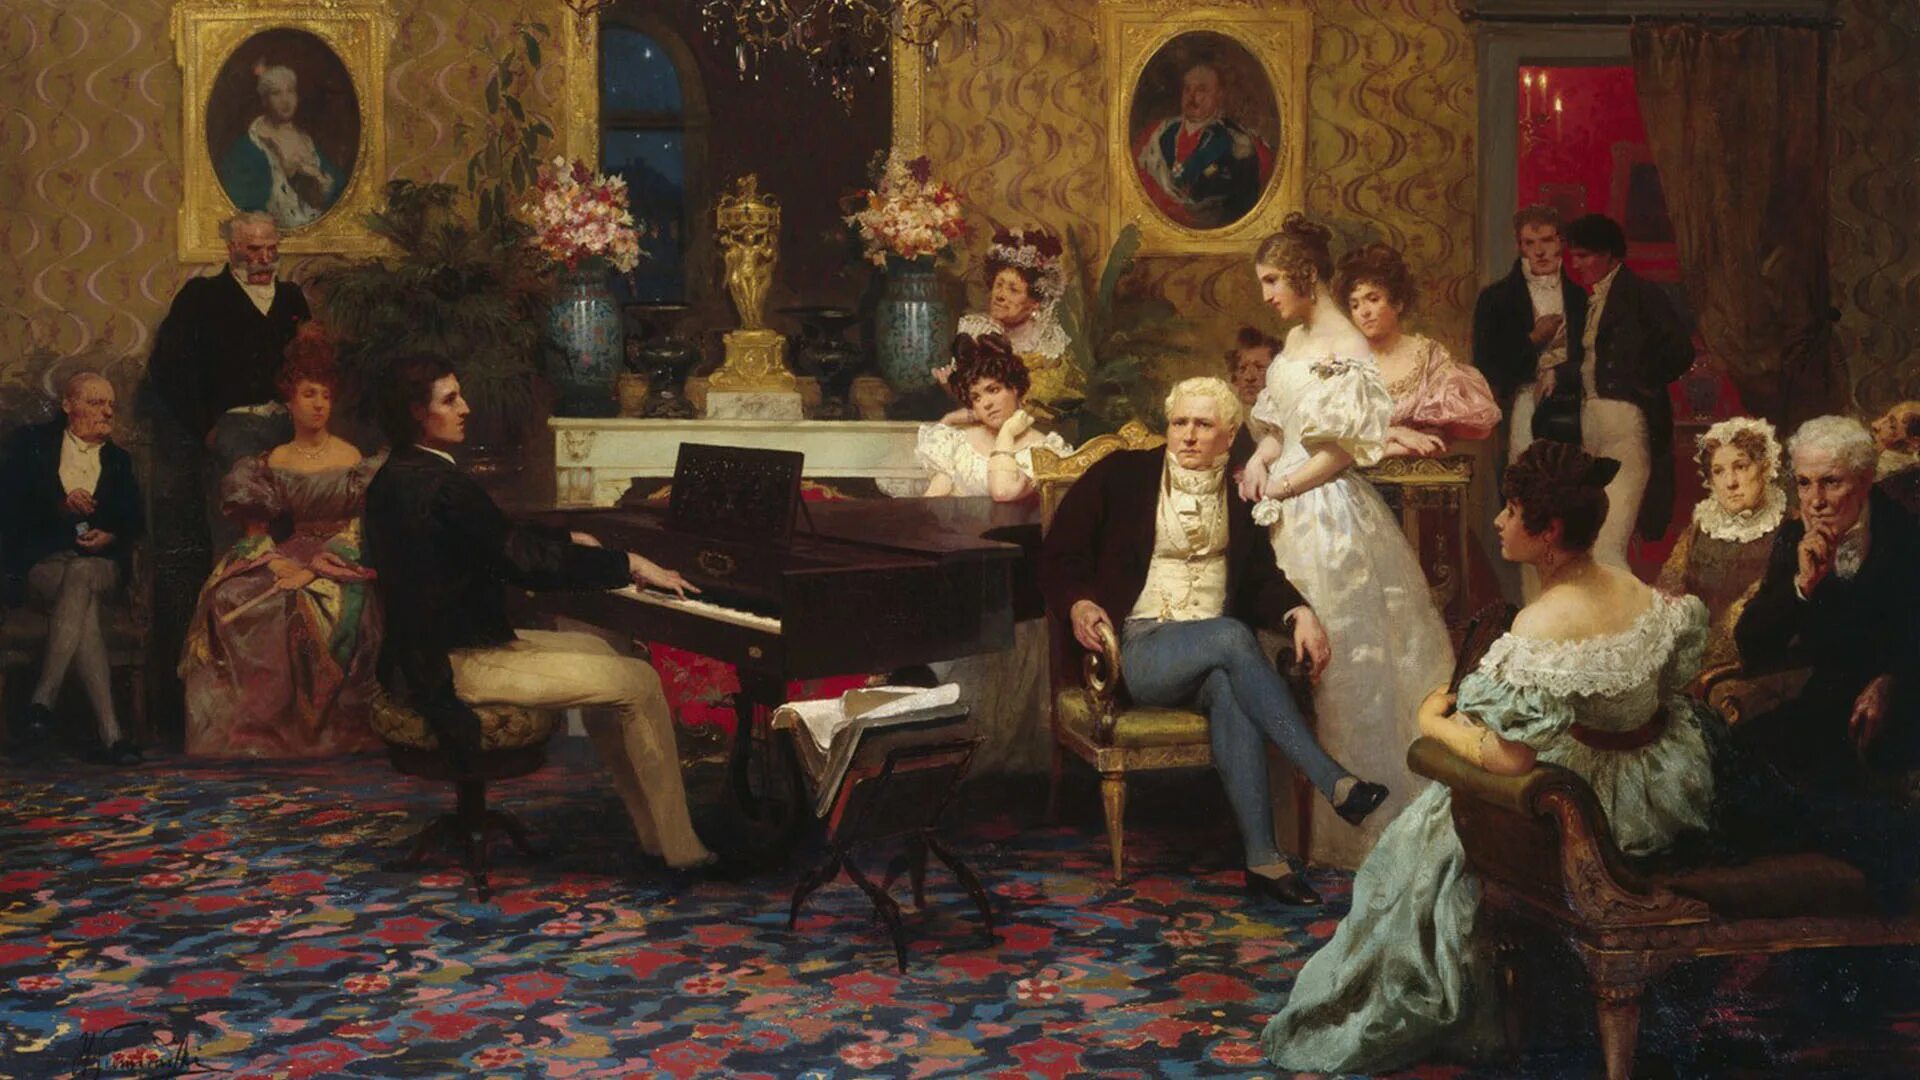 Шопен 1829. Г семирадский Шопен играющий на фортепиано в салоне князя Радзивилла. Шопен 19 век.